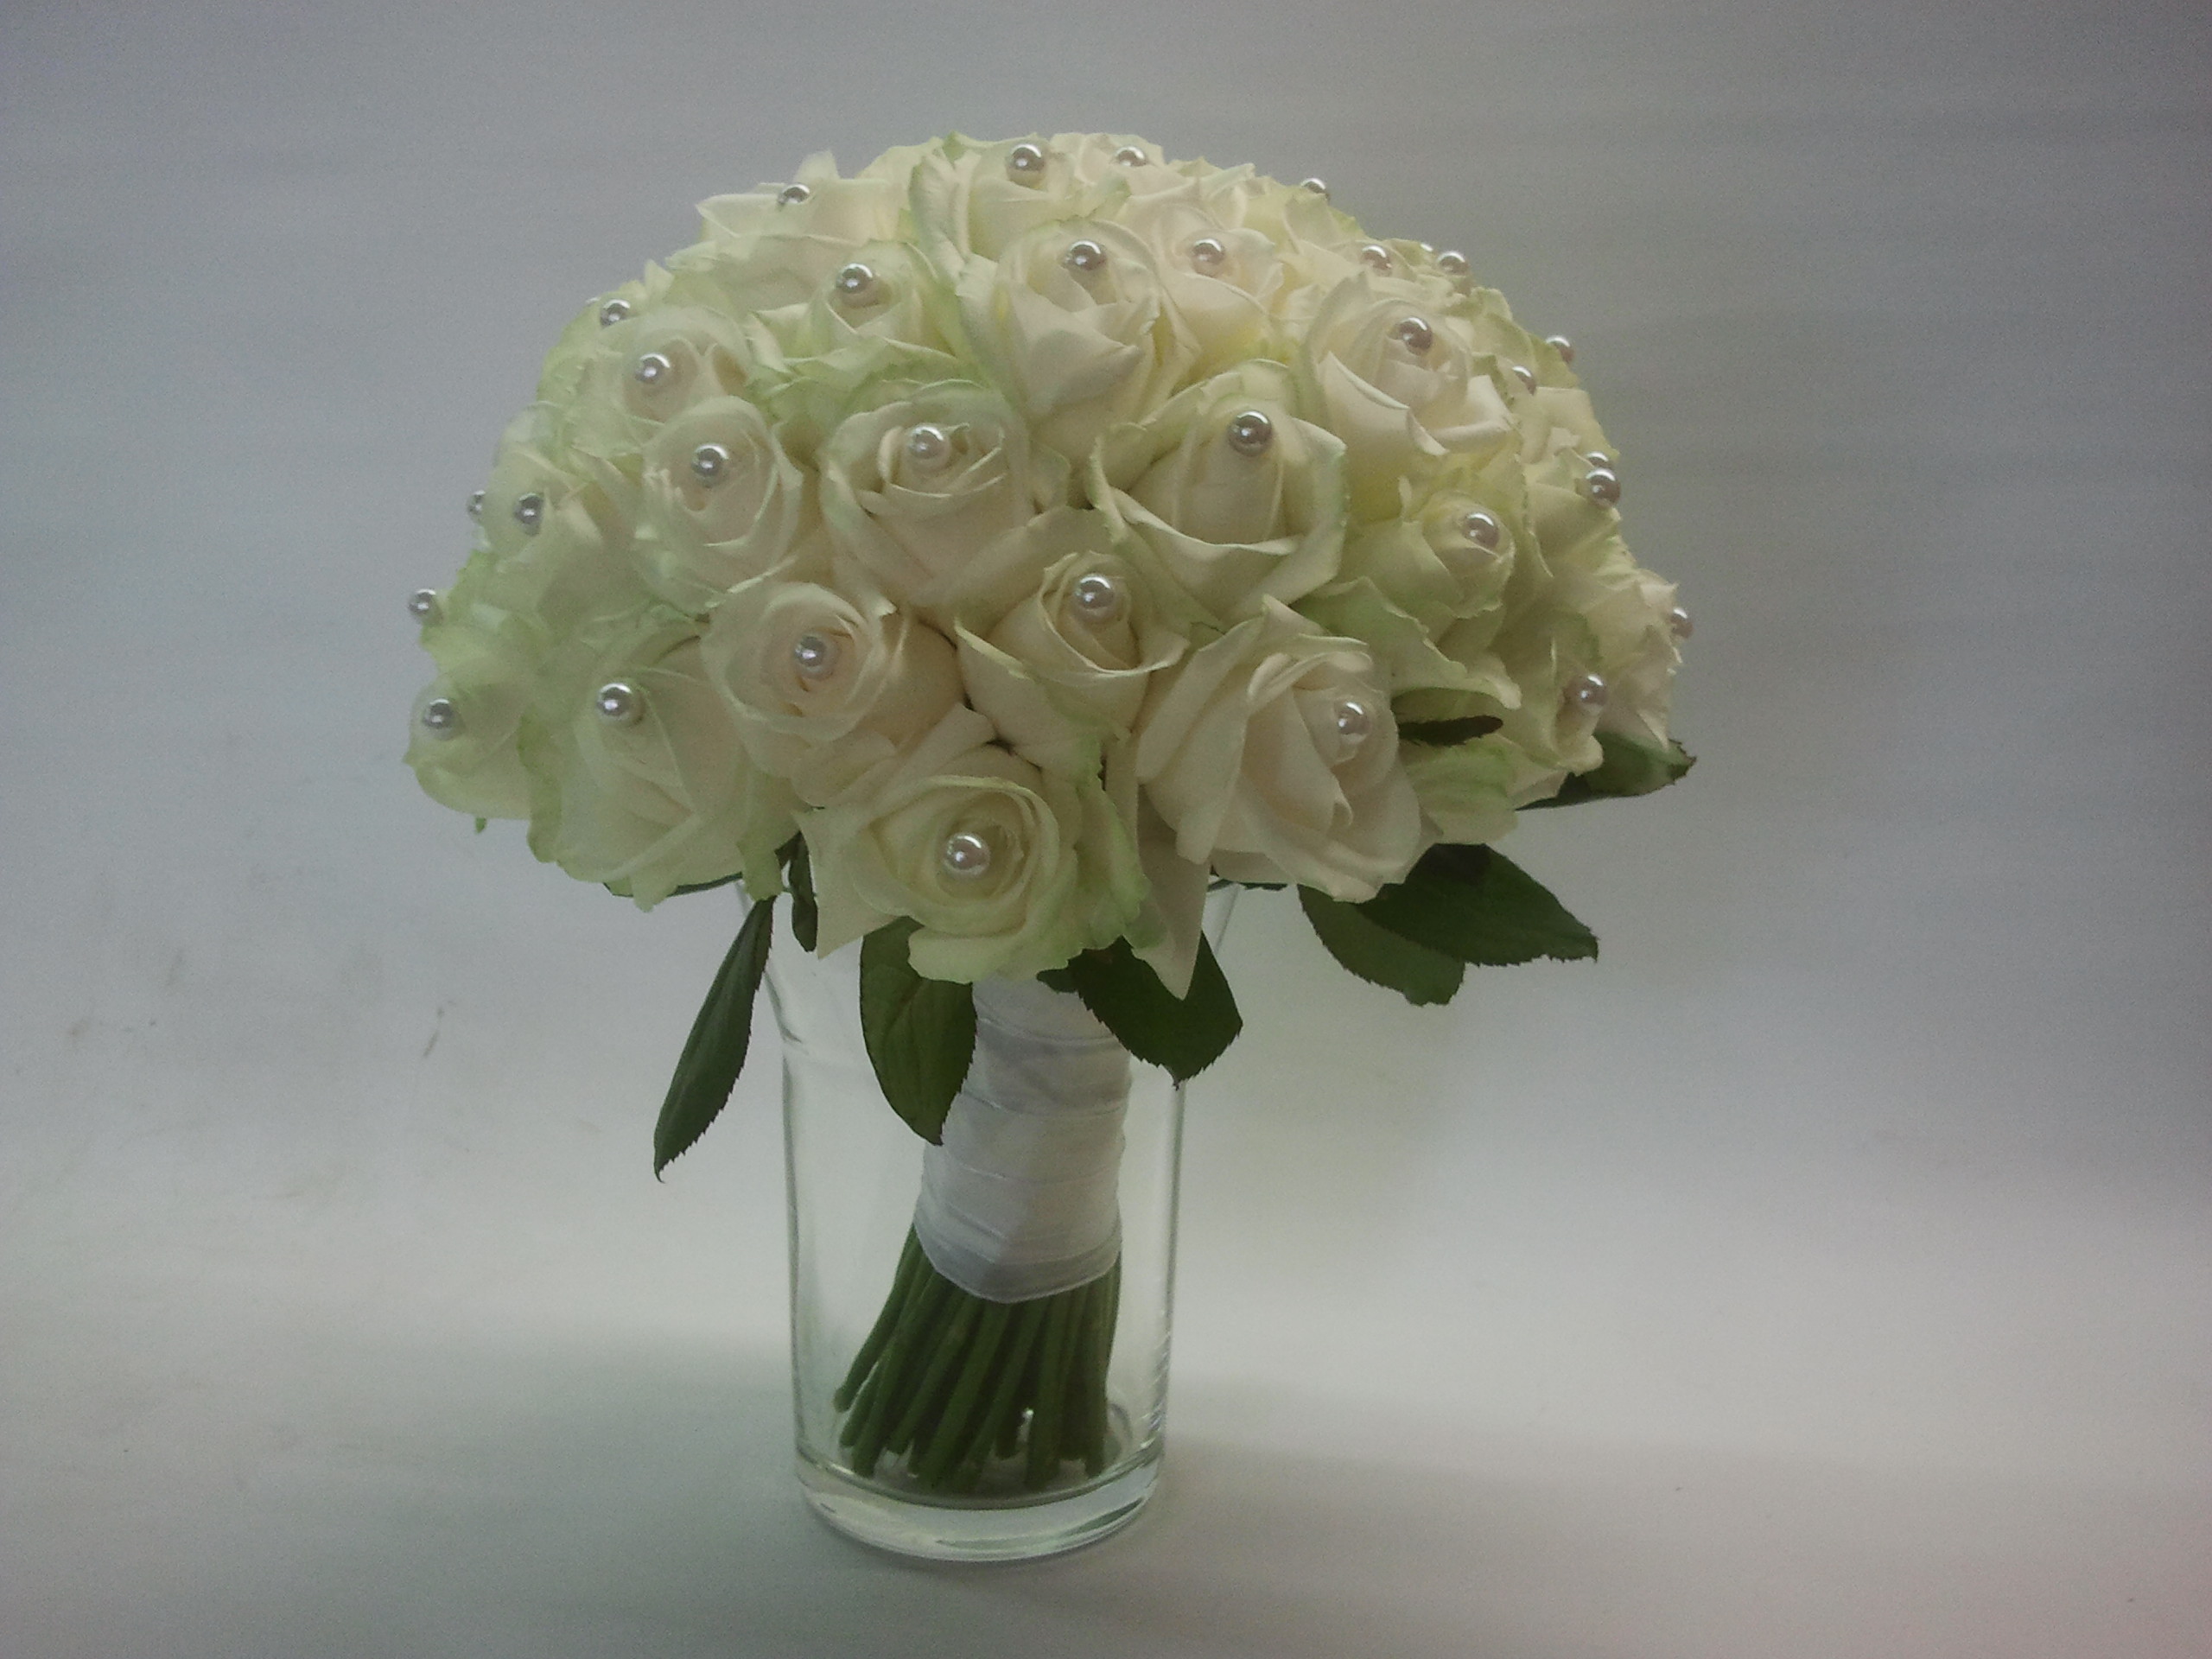 Toegeven automaat Turbulentie 018 Bruidsboeket witte rozen